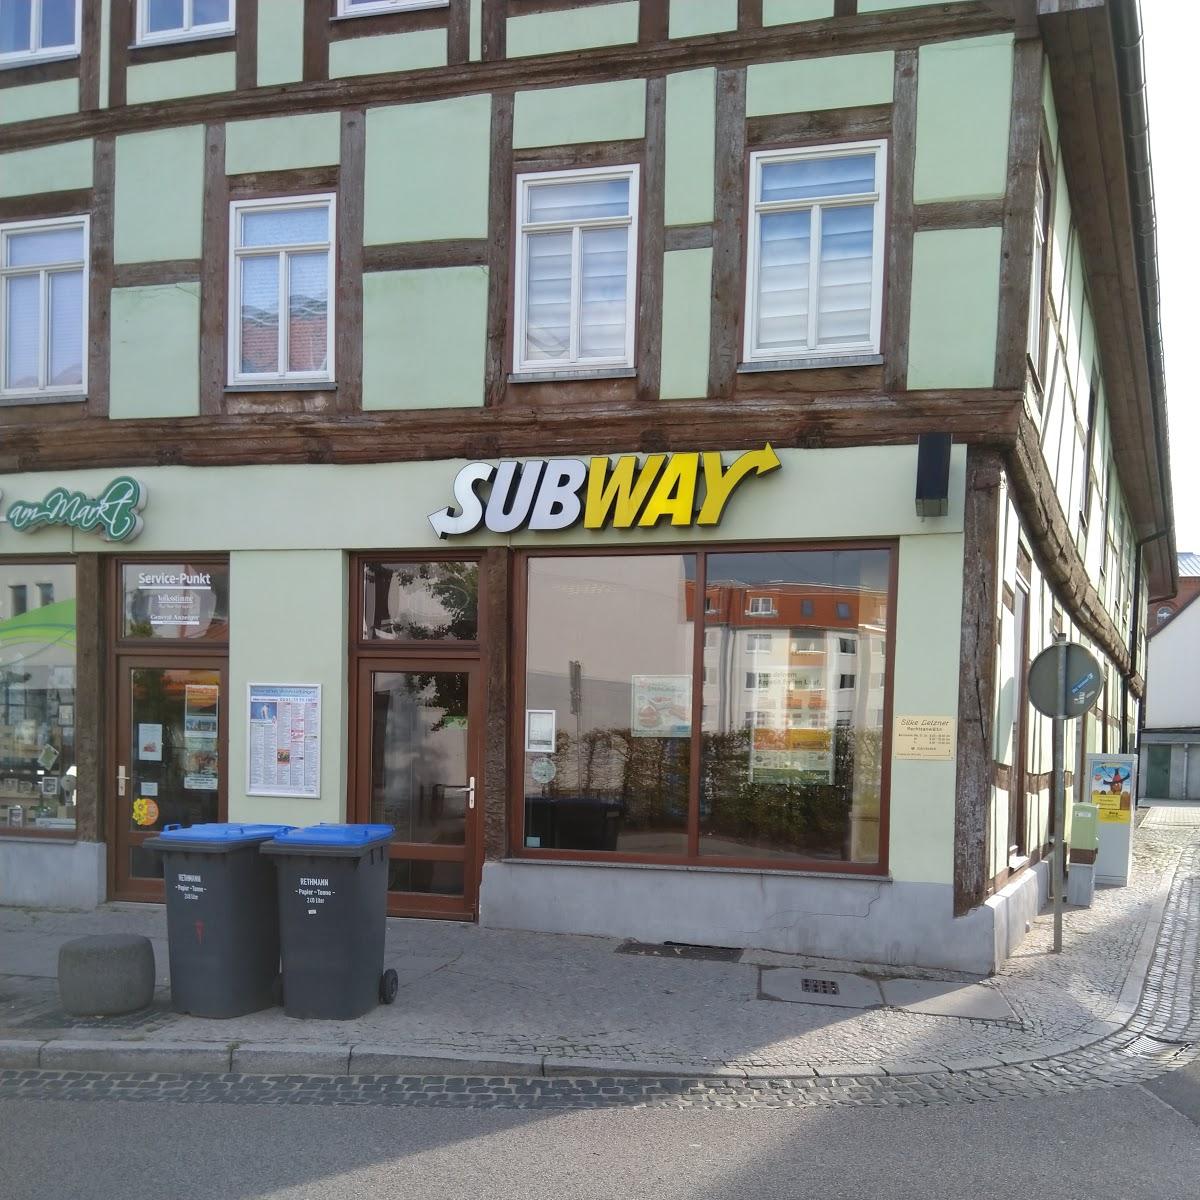 Restaurant "Subway" in Burg (bei Magdeburg)